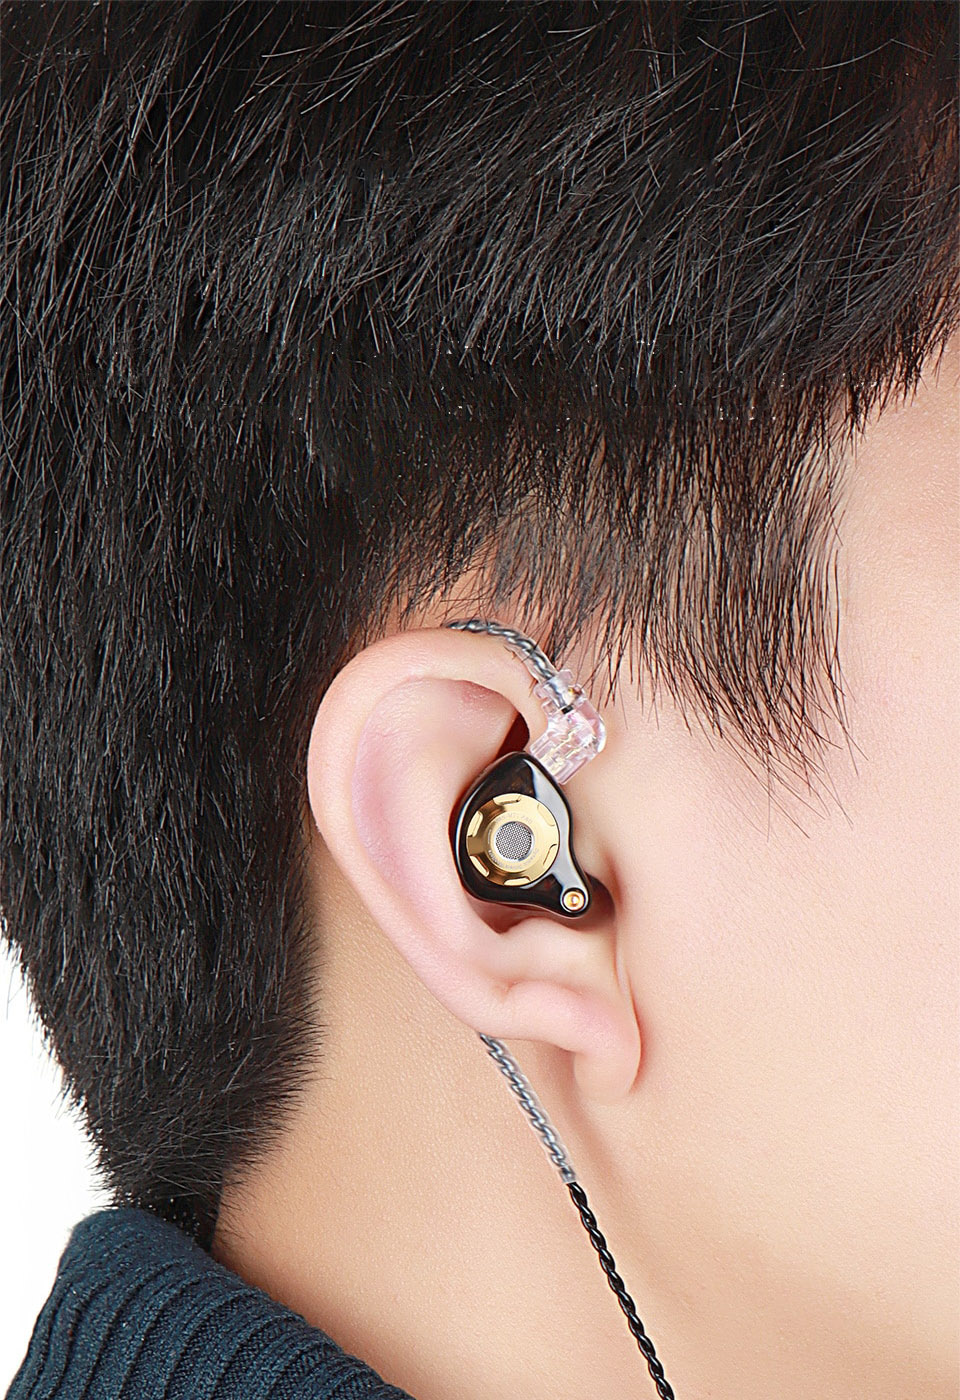 TRN MT1 Pro in a man's ear